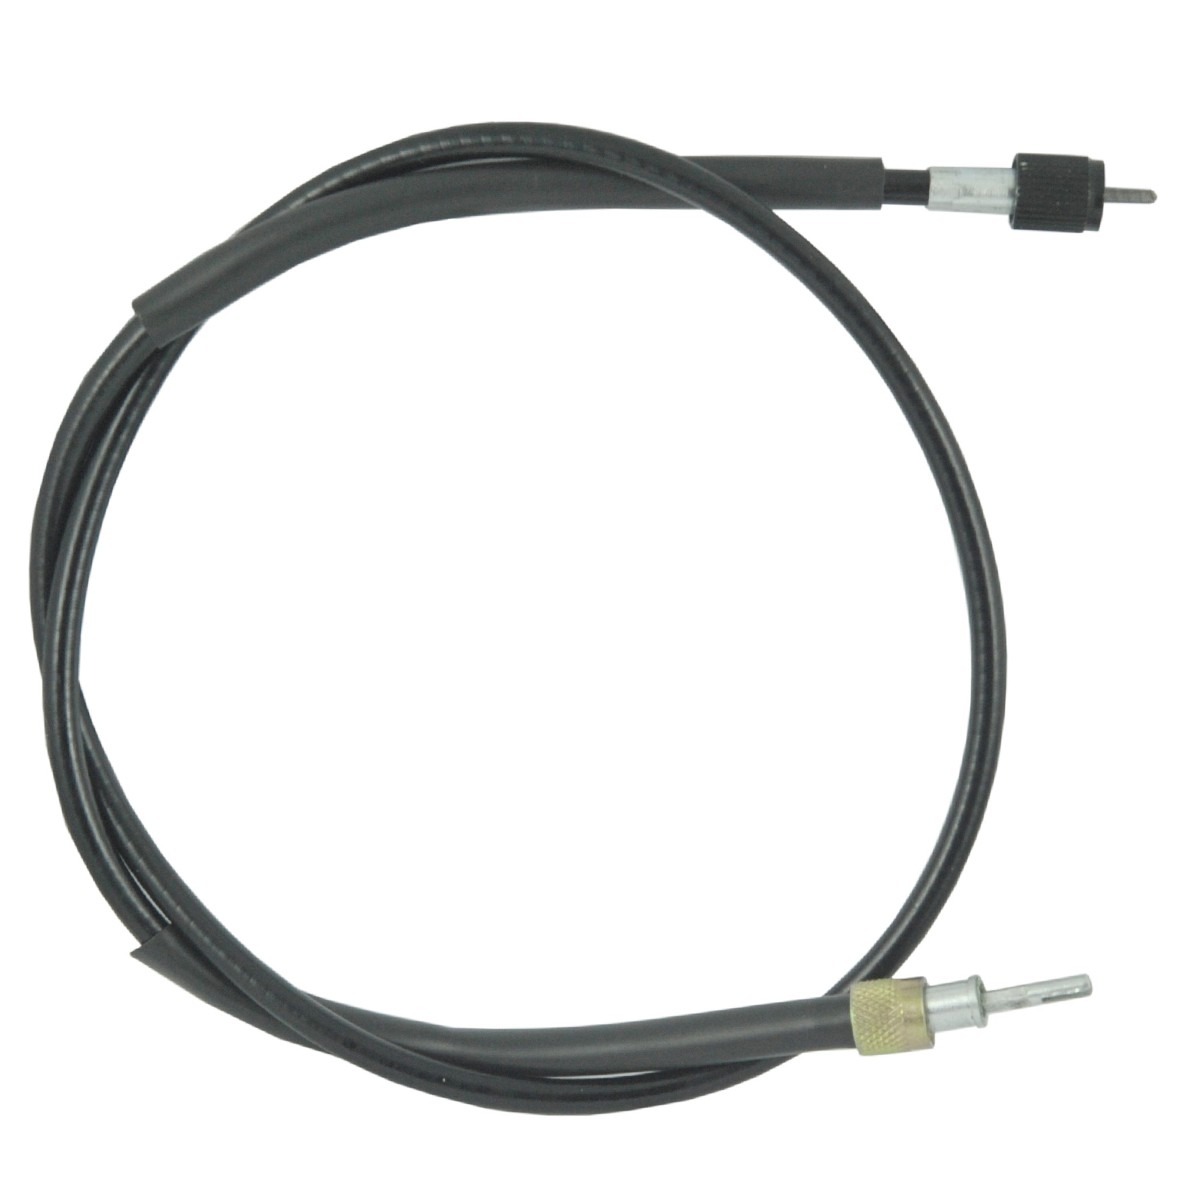 Cable contador / 940 mm / Kubota GL19/GT3/L3408 / 31341-34654 / OBMT12